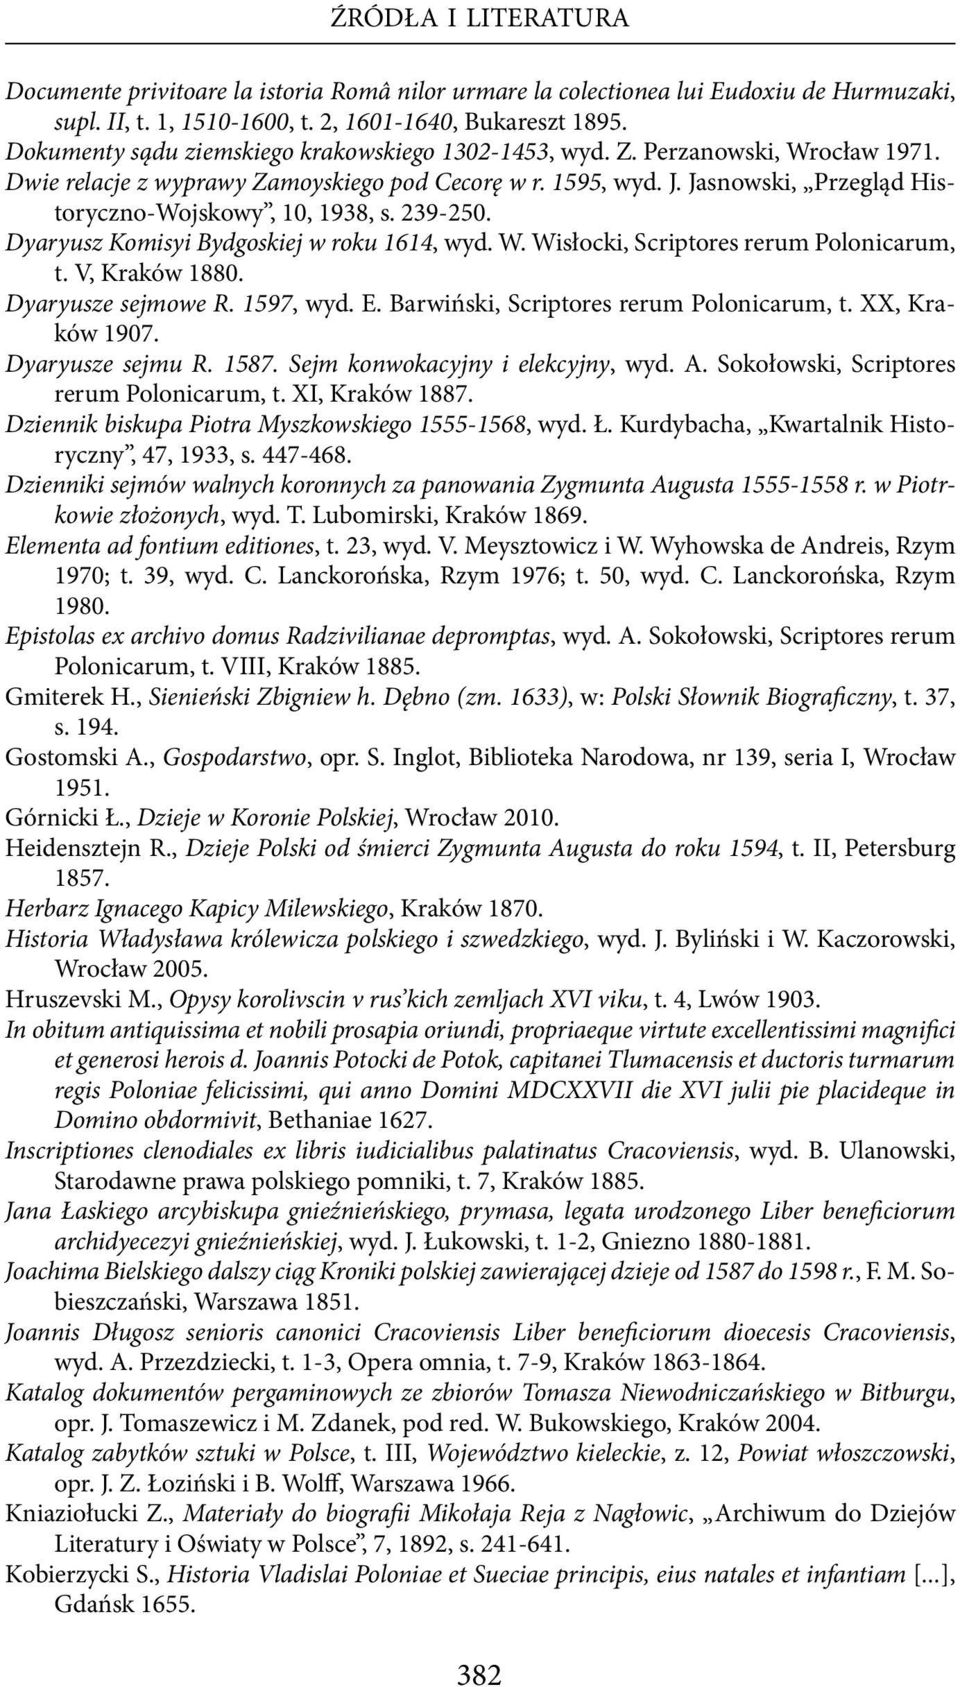 Jasnowski, Przegląd Historyczno-Wojskowy, 10, 1938, s. 239-250. Dyaryusz Komisyi Bydgoskiej w roku 1614, wyd. W. Wisłocki, Scriptores rerum Polonicarum, t. V, Kraków 1880. Dyaryusze sejmowe R.